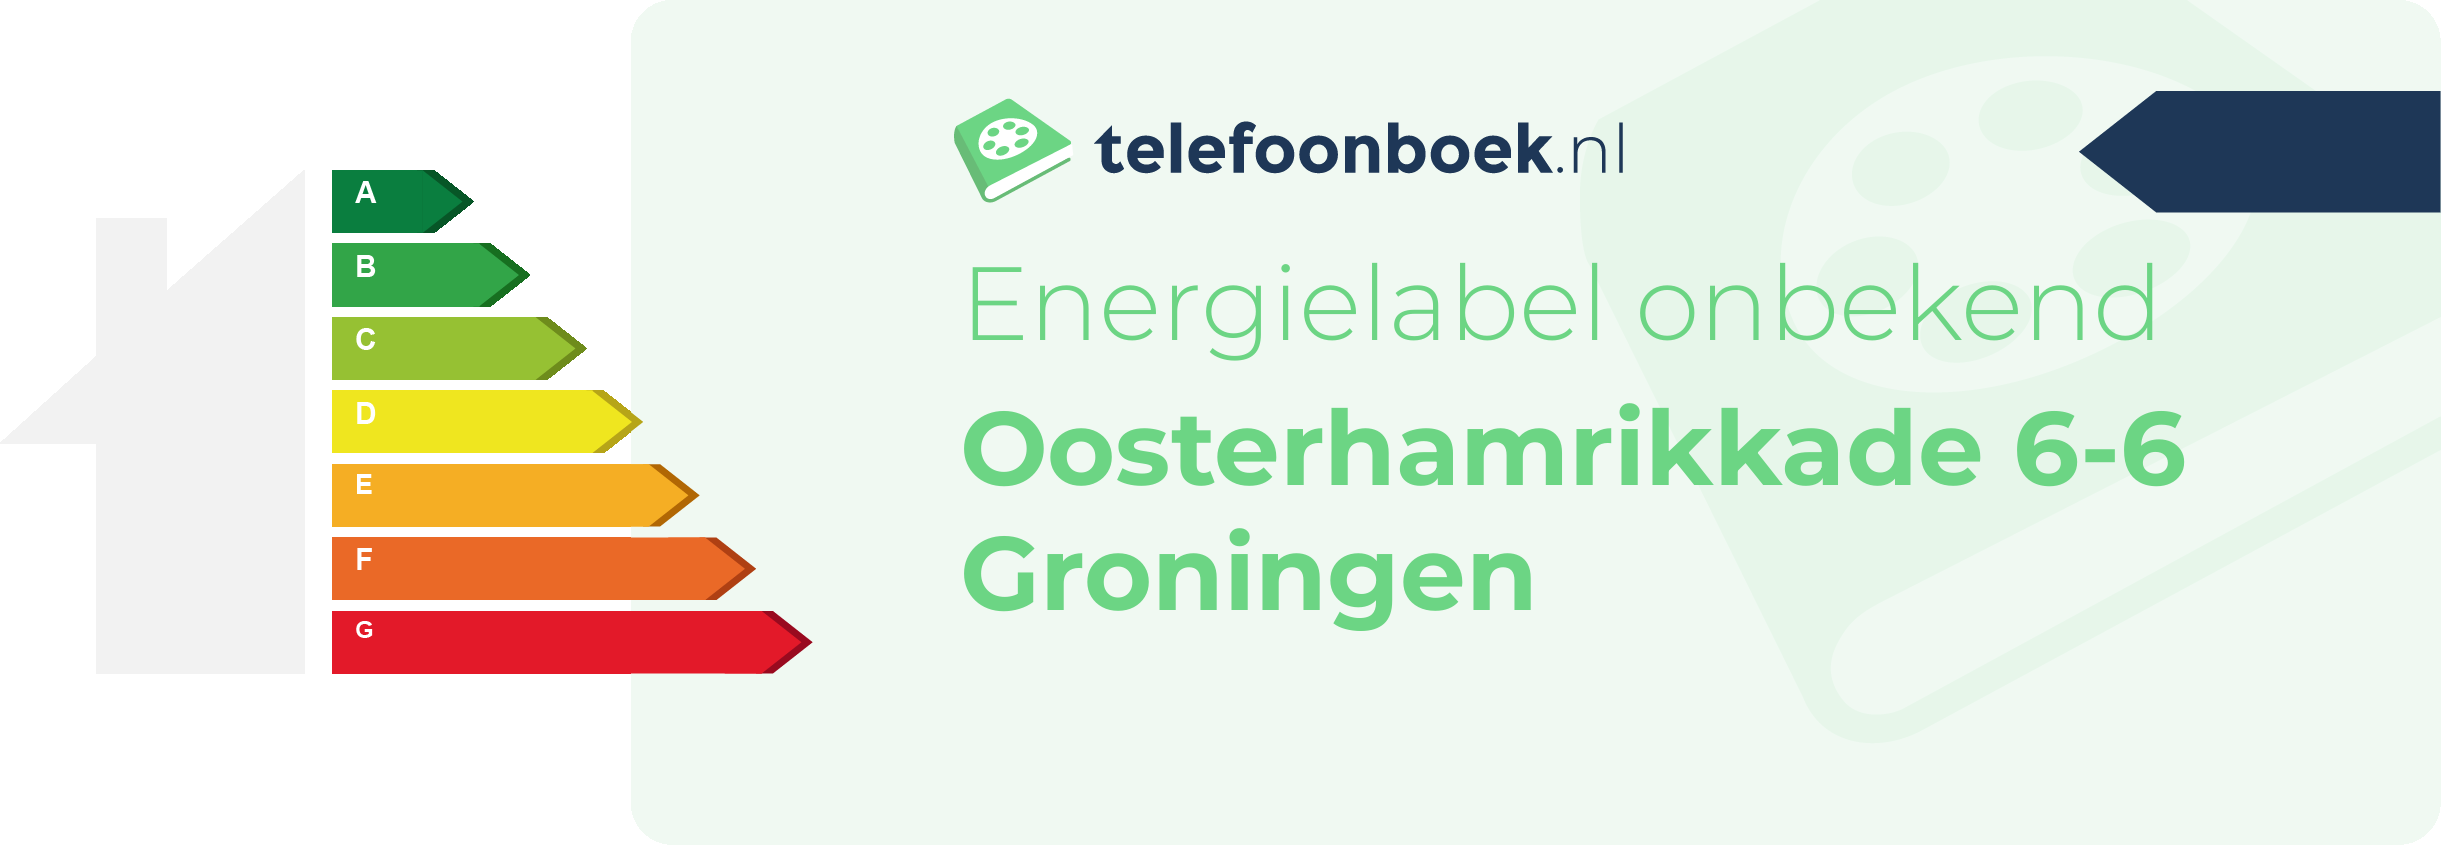 Energielabel Oosterhamrikkade 6-6 Groningen